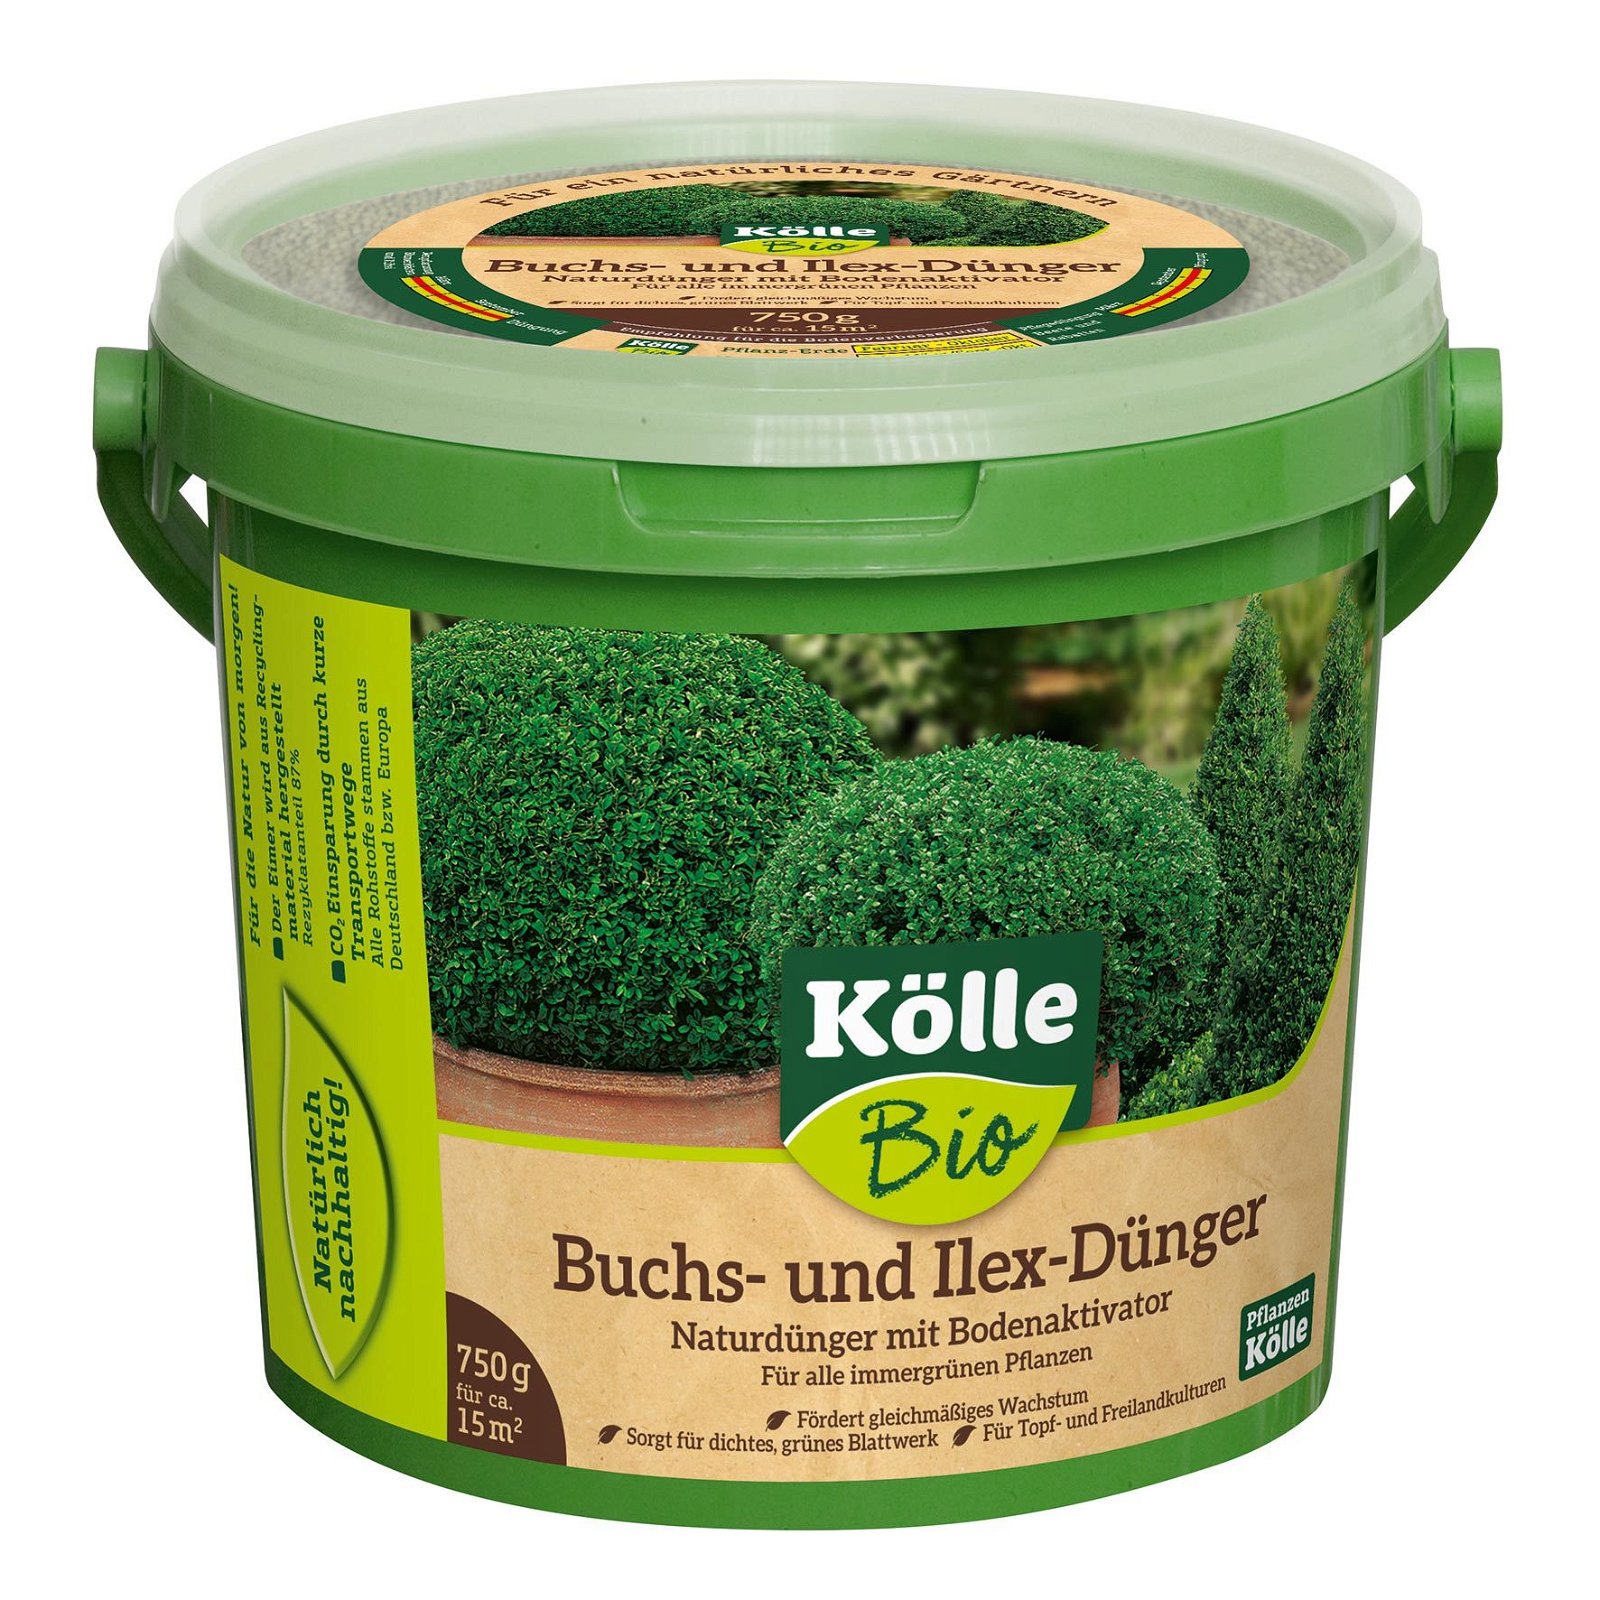 Buchs- & Ilexdünger, 750 g Eimer, Naturdünger mit Bodenaktivator